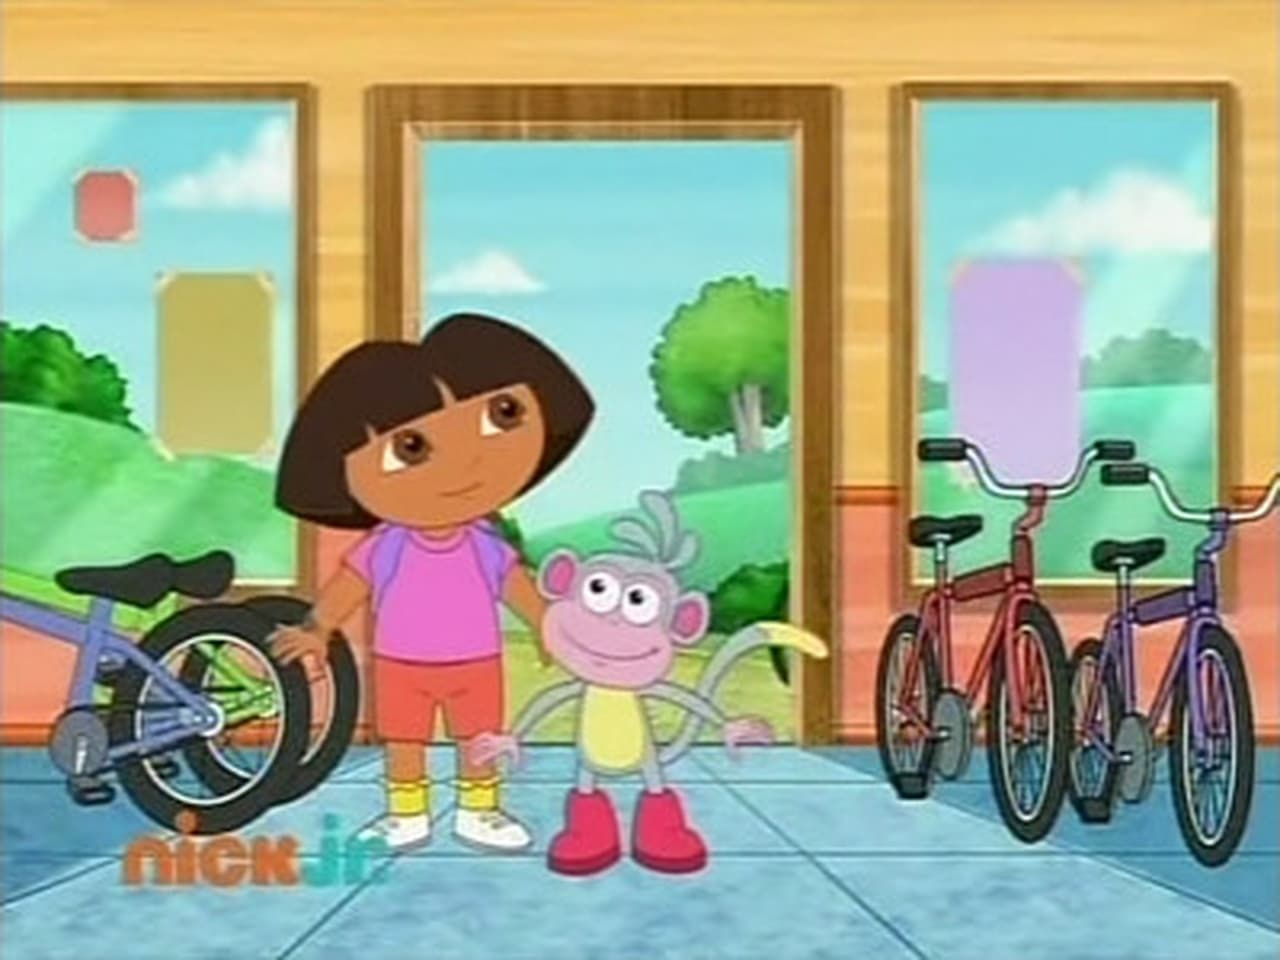 Dora the Explorer Season 6 Episode 7 (A Crown for King BoBo) Images & P...